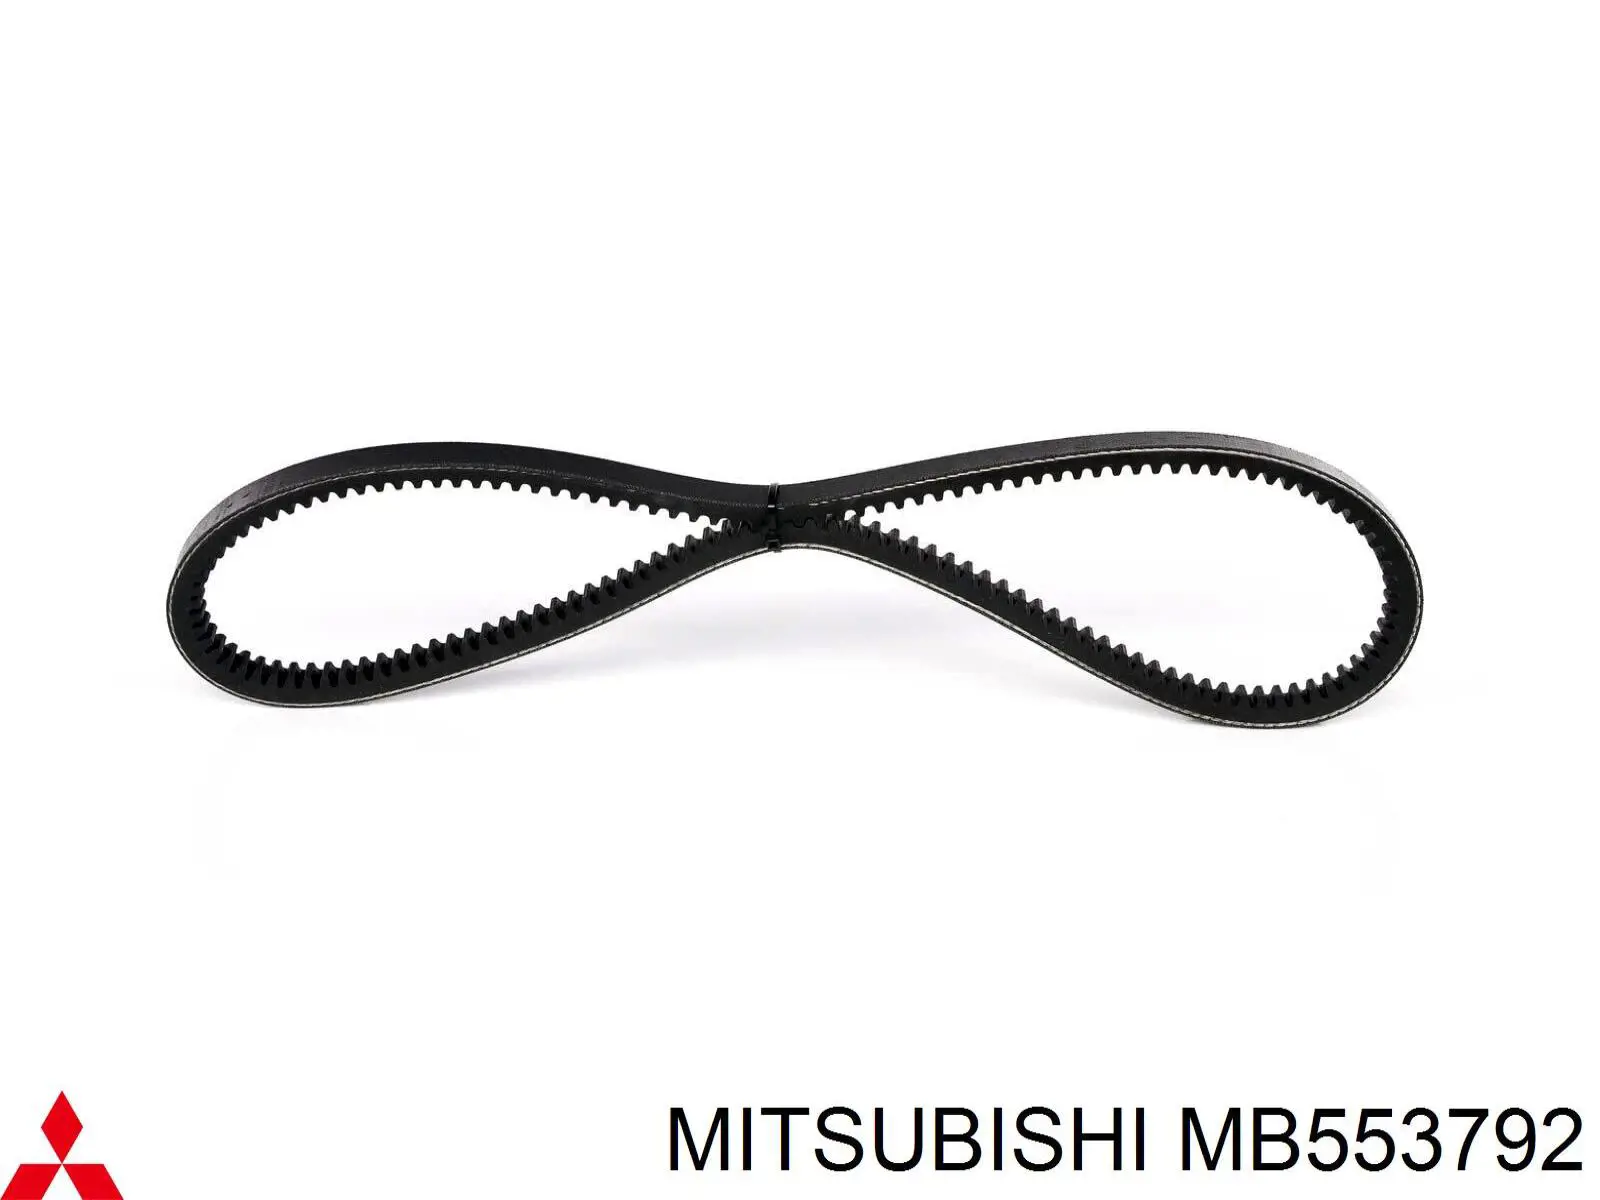 MB553792 Mitsubishi correa trapezoidal